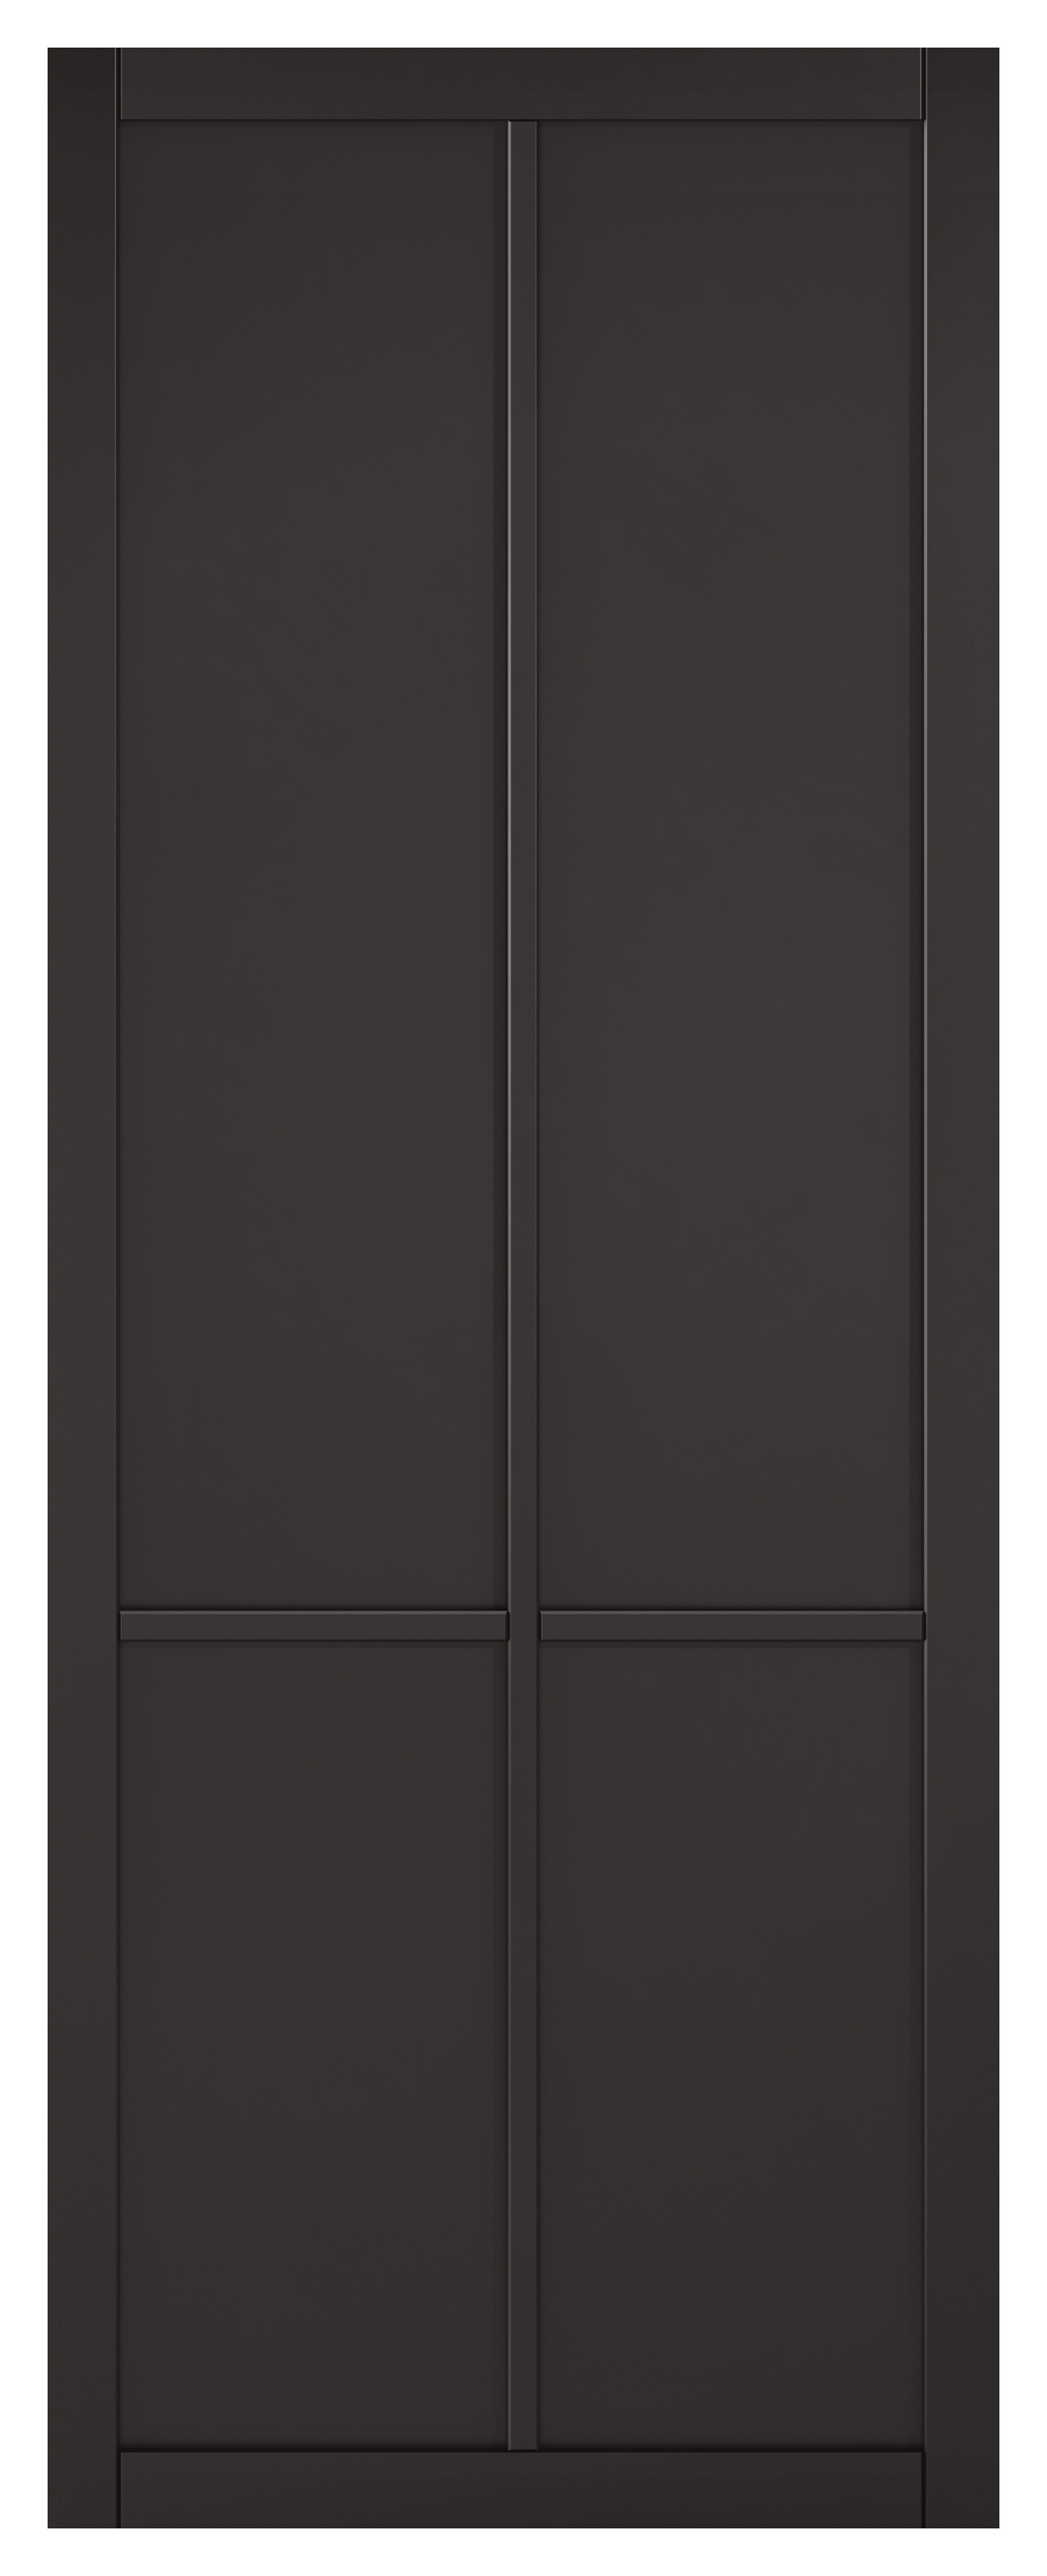 Image of LPD Internal Liberty 4 Panel Primed Black Solid Core Door - 838 x 1981mm